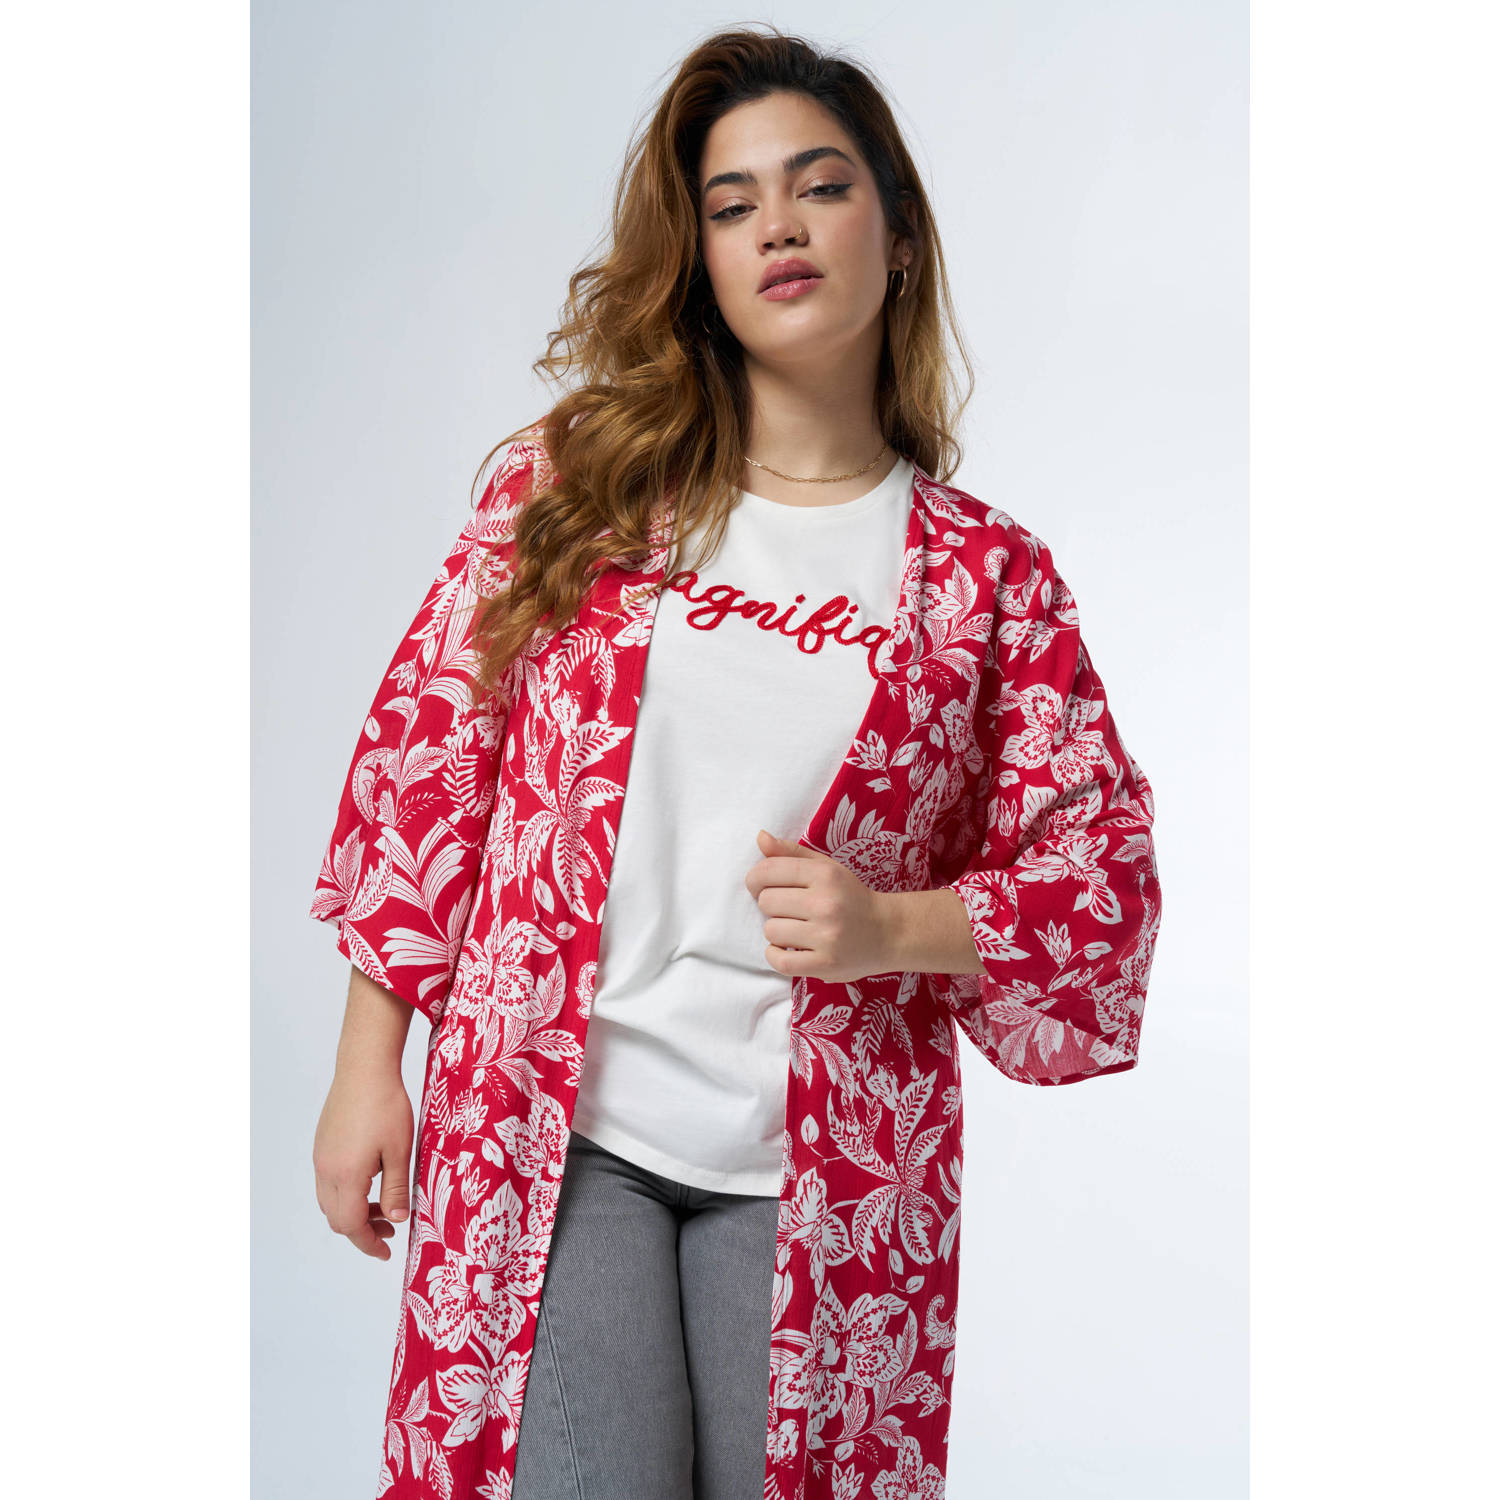 MS Mode kimono met all over print en ceintuur rood wit